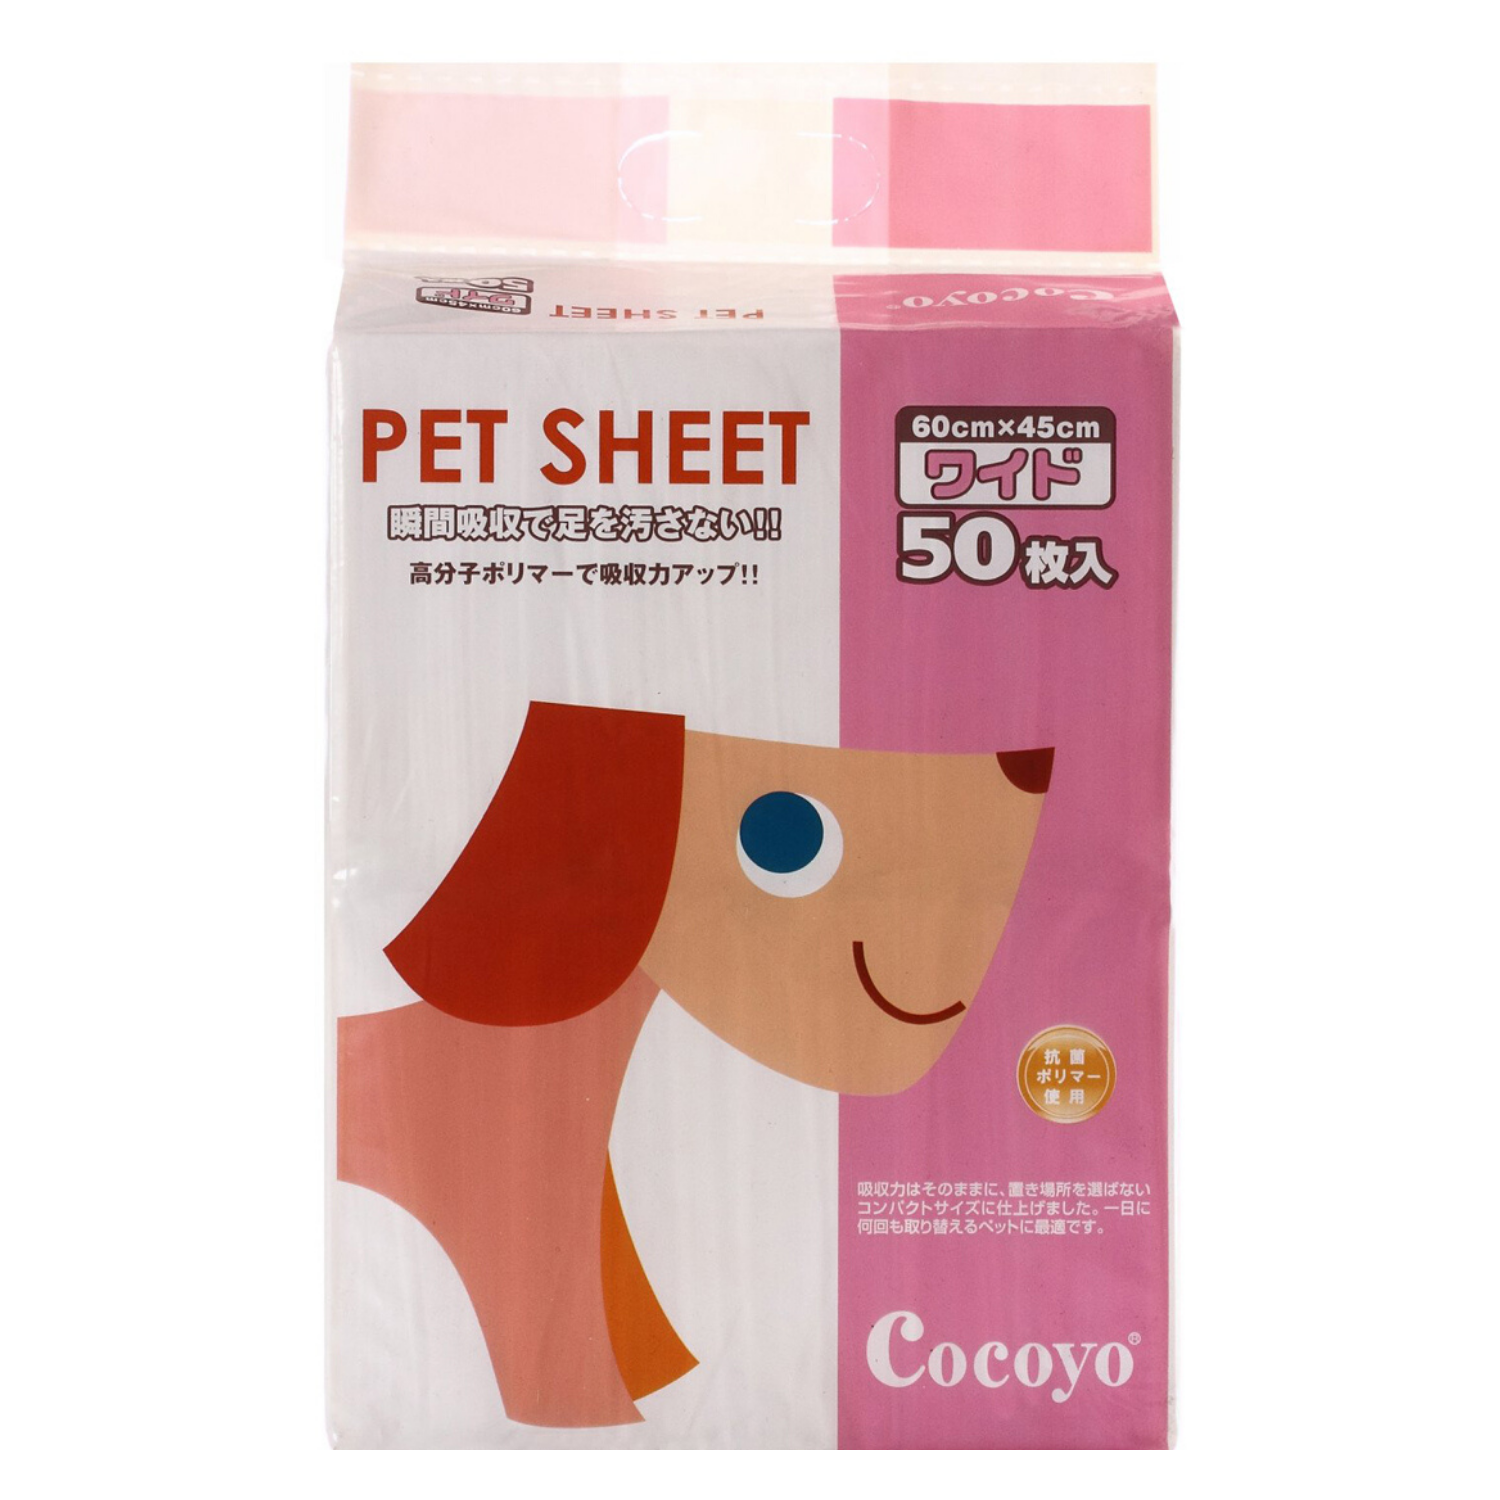 Cocoyo Pee Sheets (Medium) - 50 Pieces (BUY 2 GET 1 FREE)